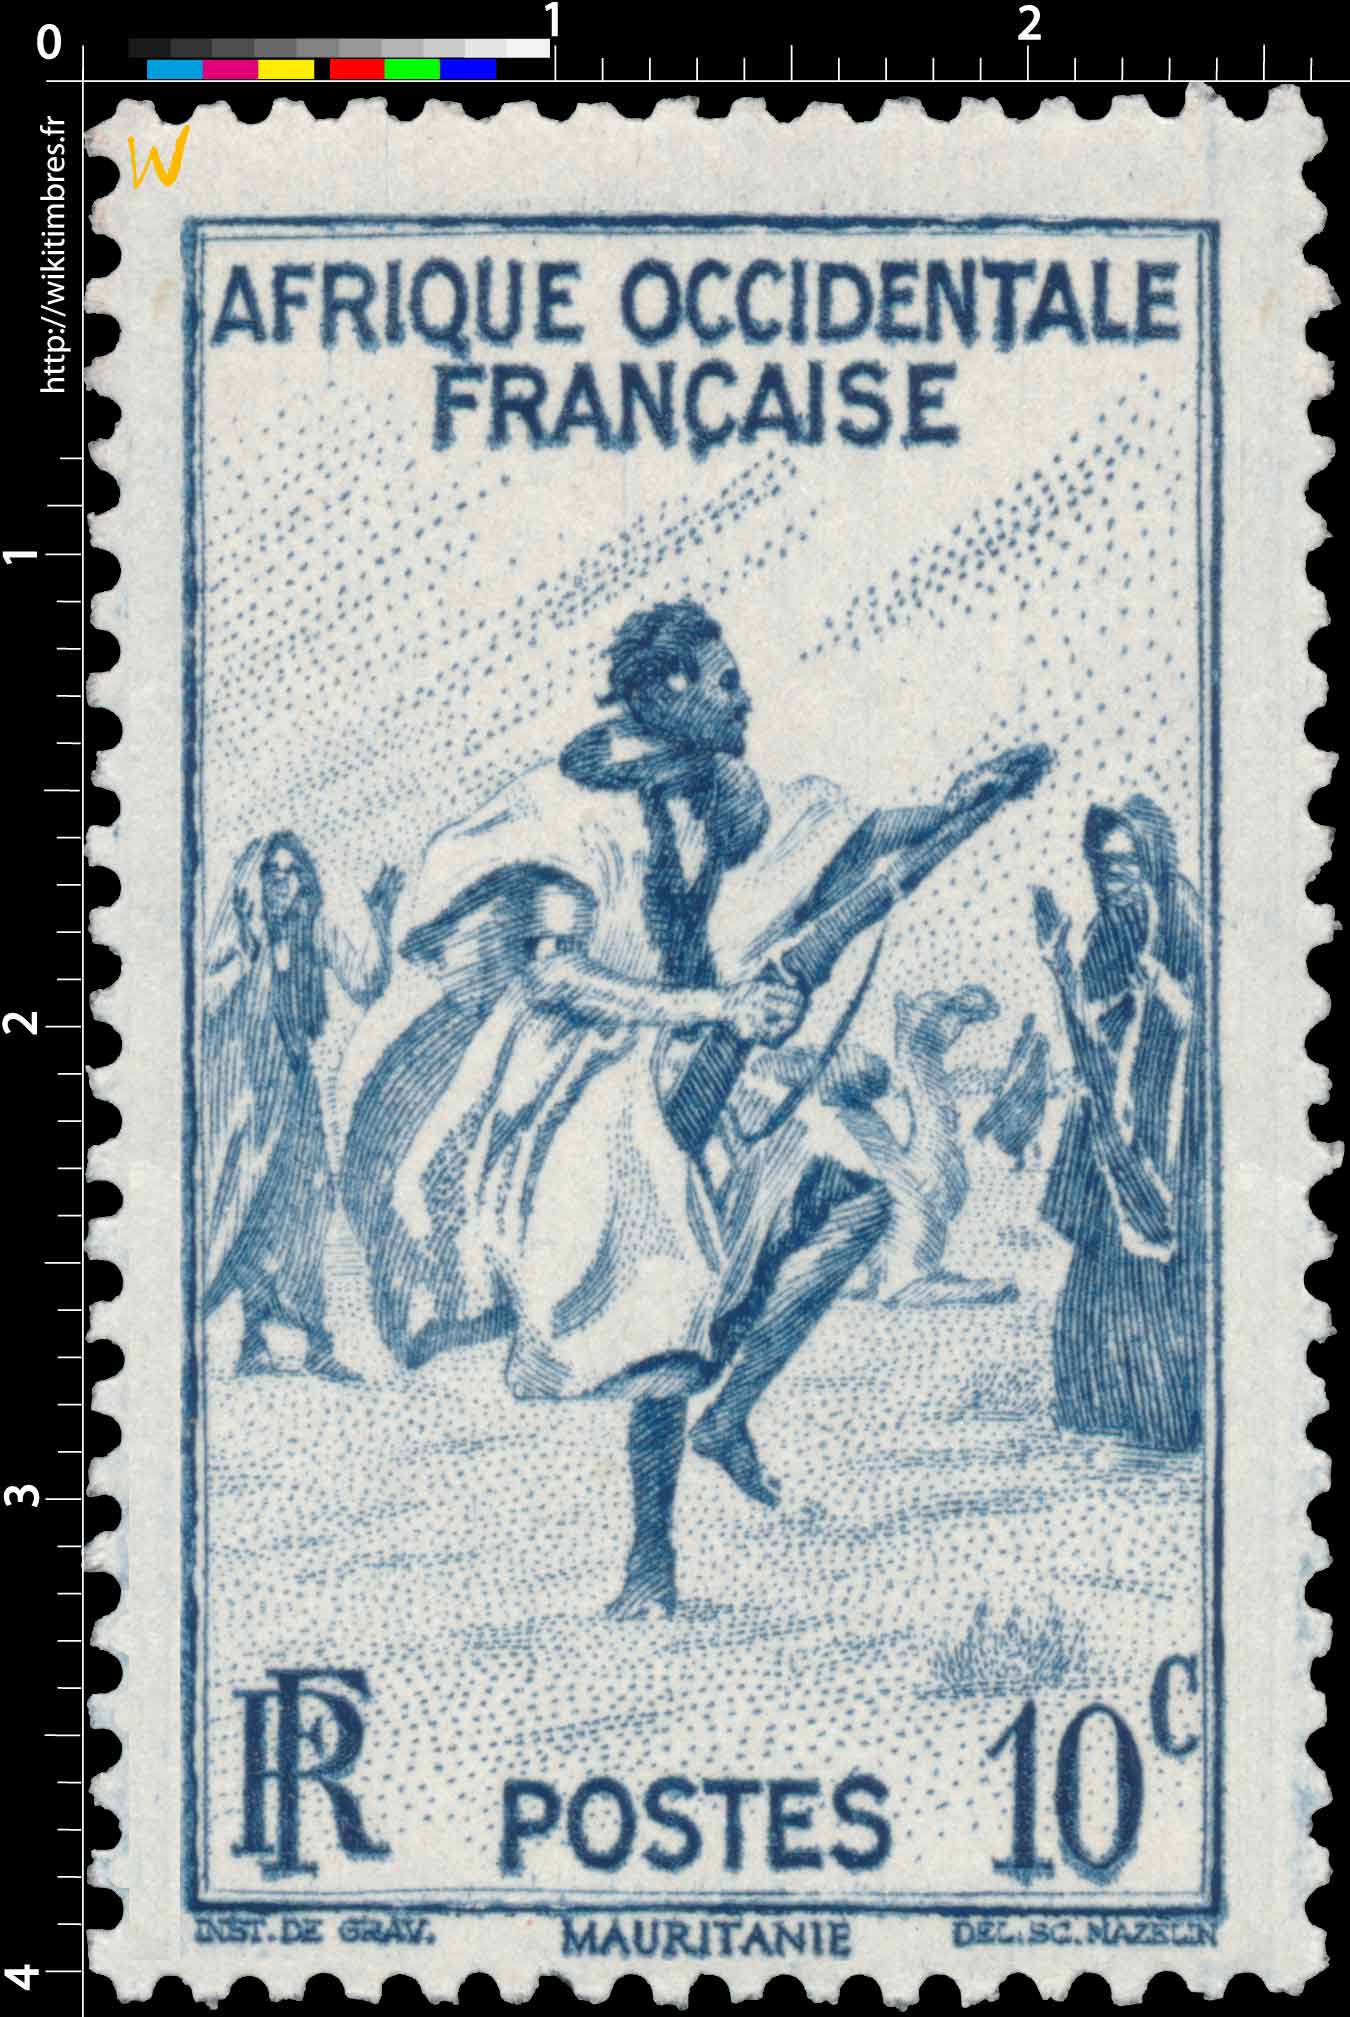 Afrique Occidentale Française Mauritanie